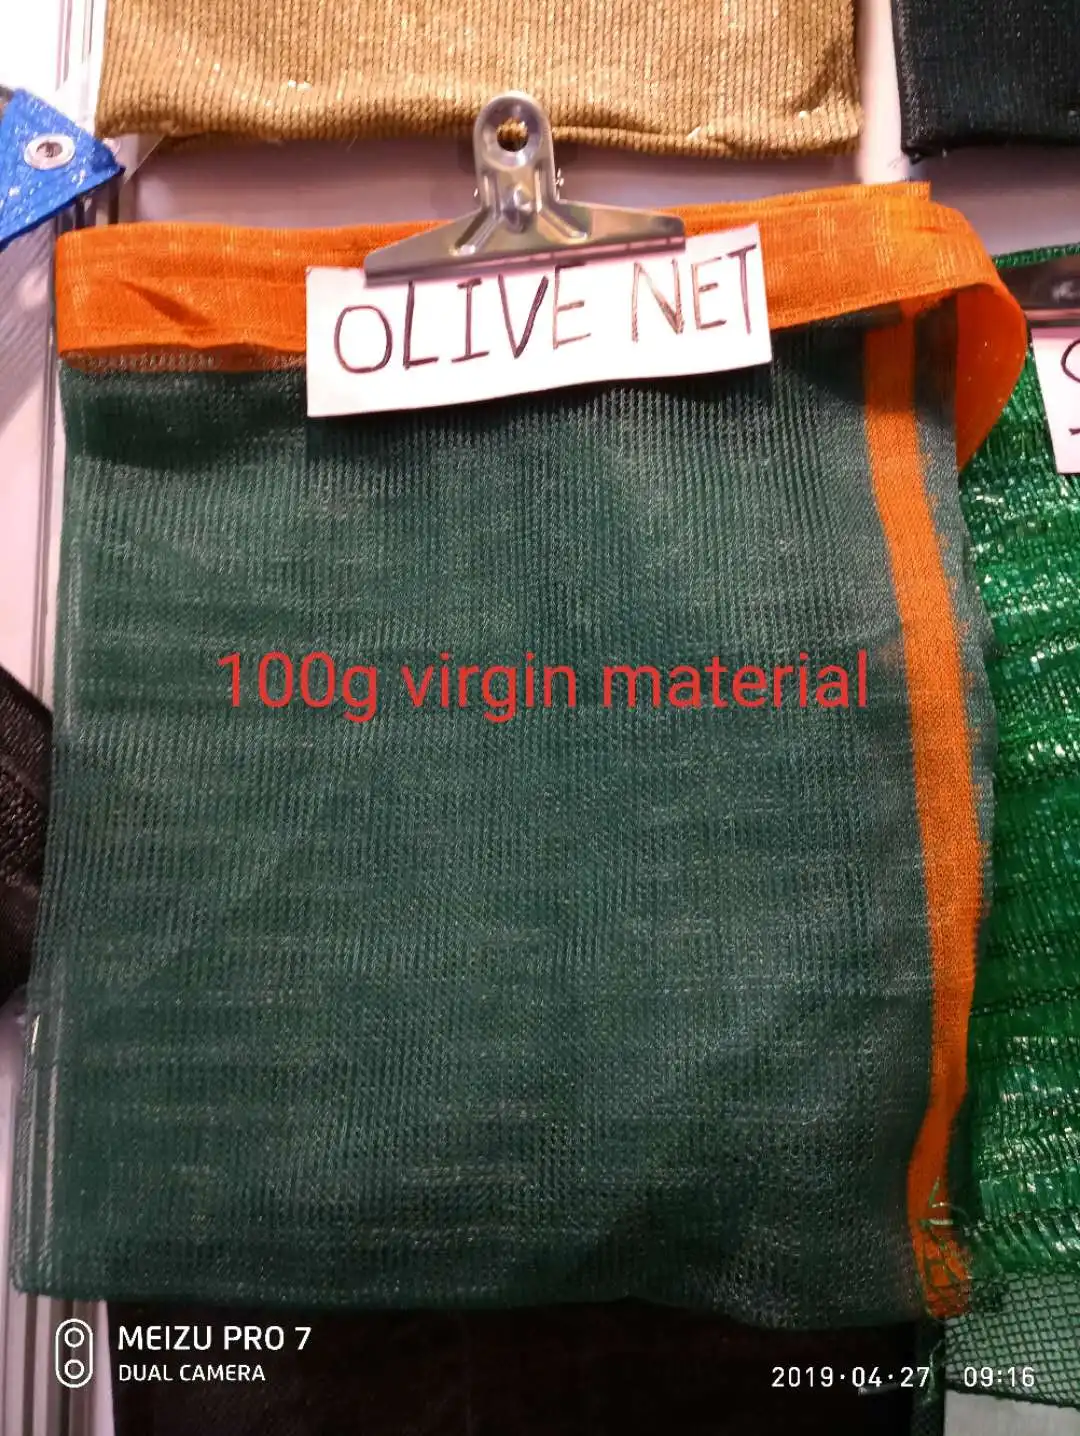 100%virgin material HDPE olive net for olive harvest